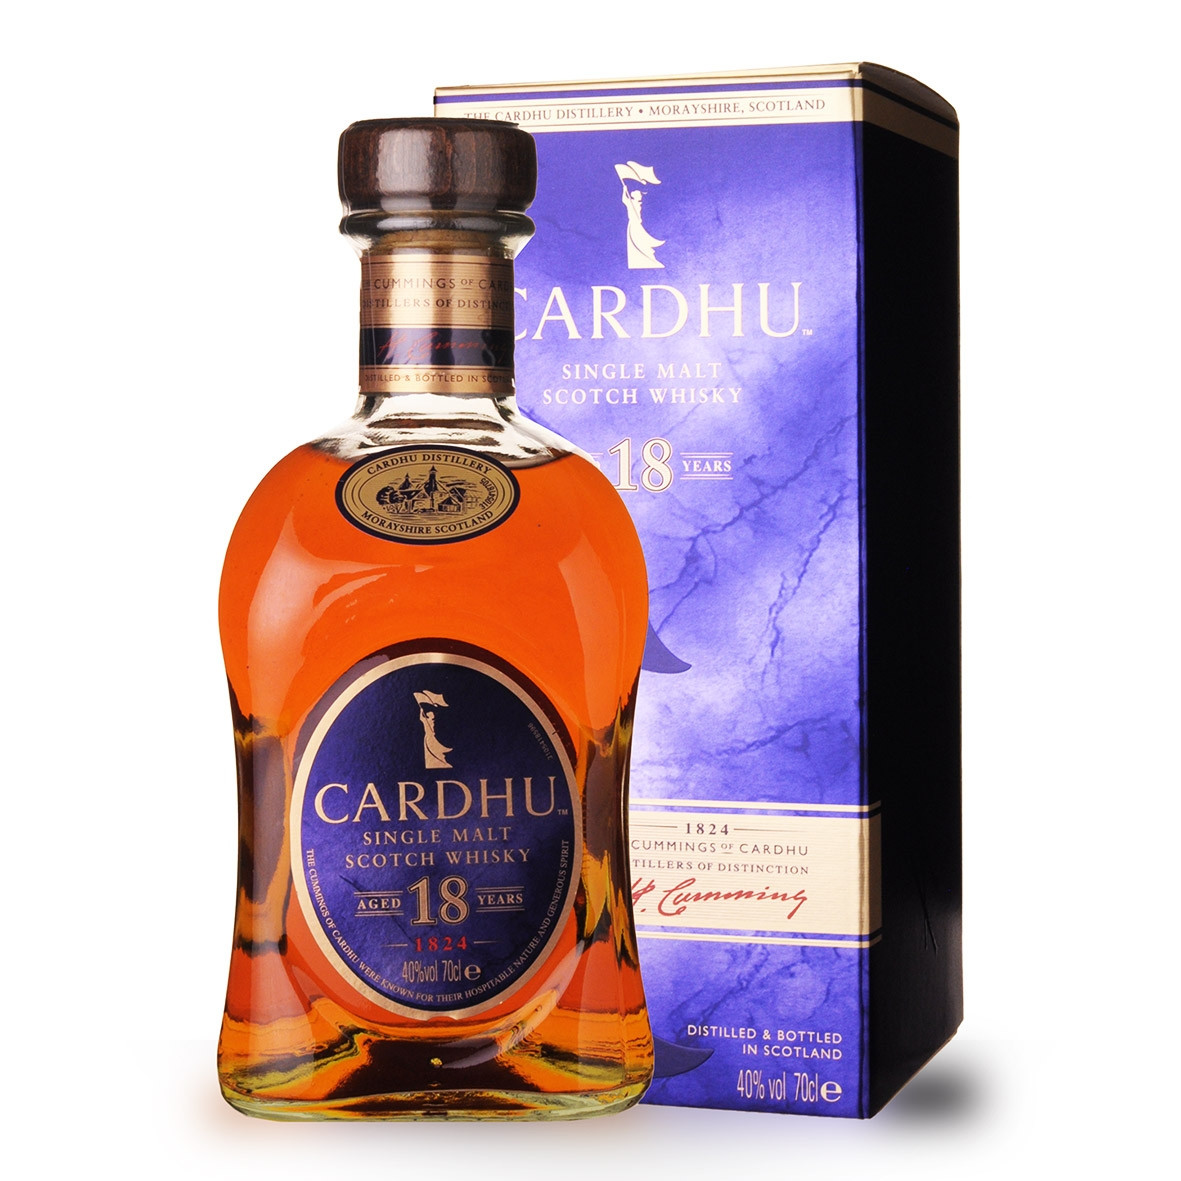 Achat de Whisky Cardhu 18 ans 70cl vendu en Etui sur notre site -  Odyssee-vins